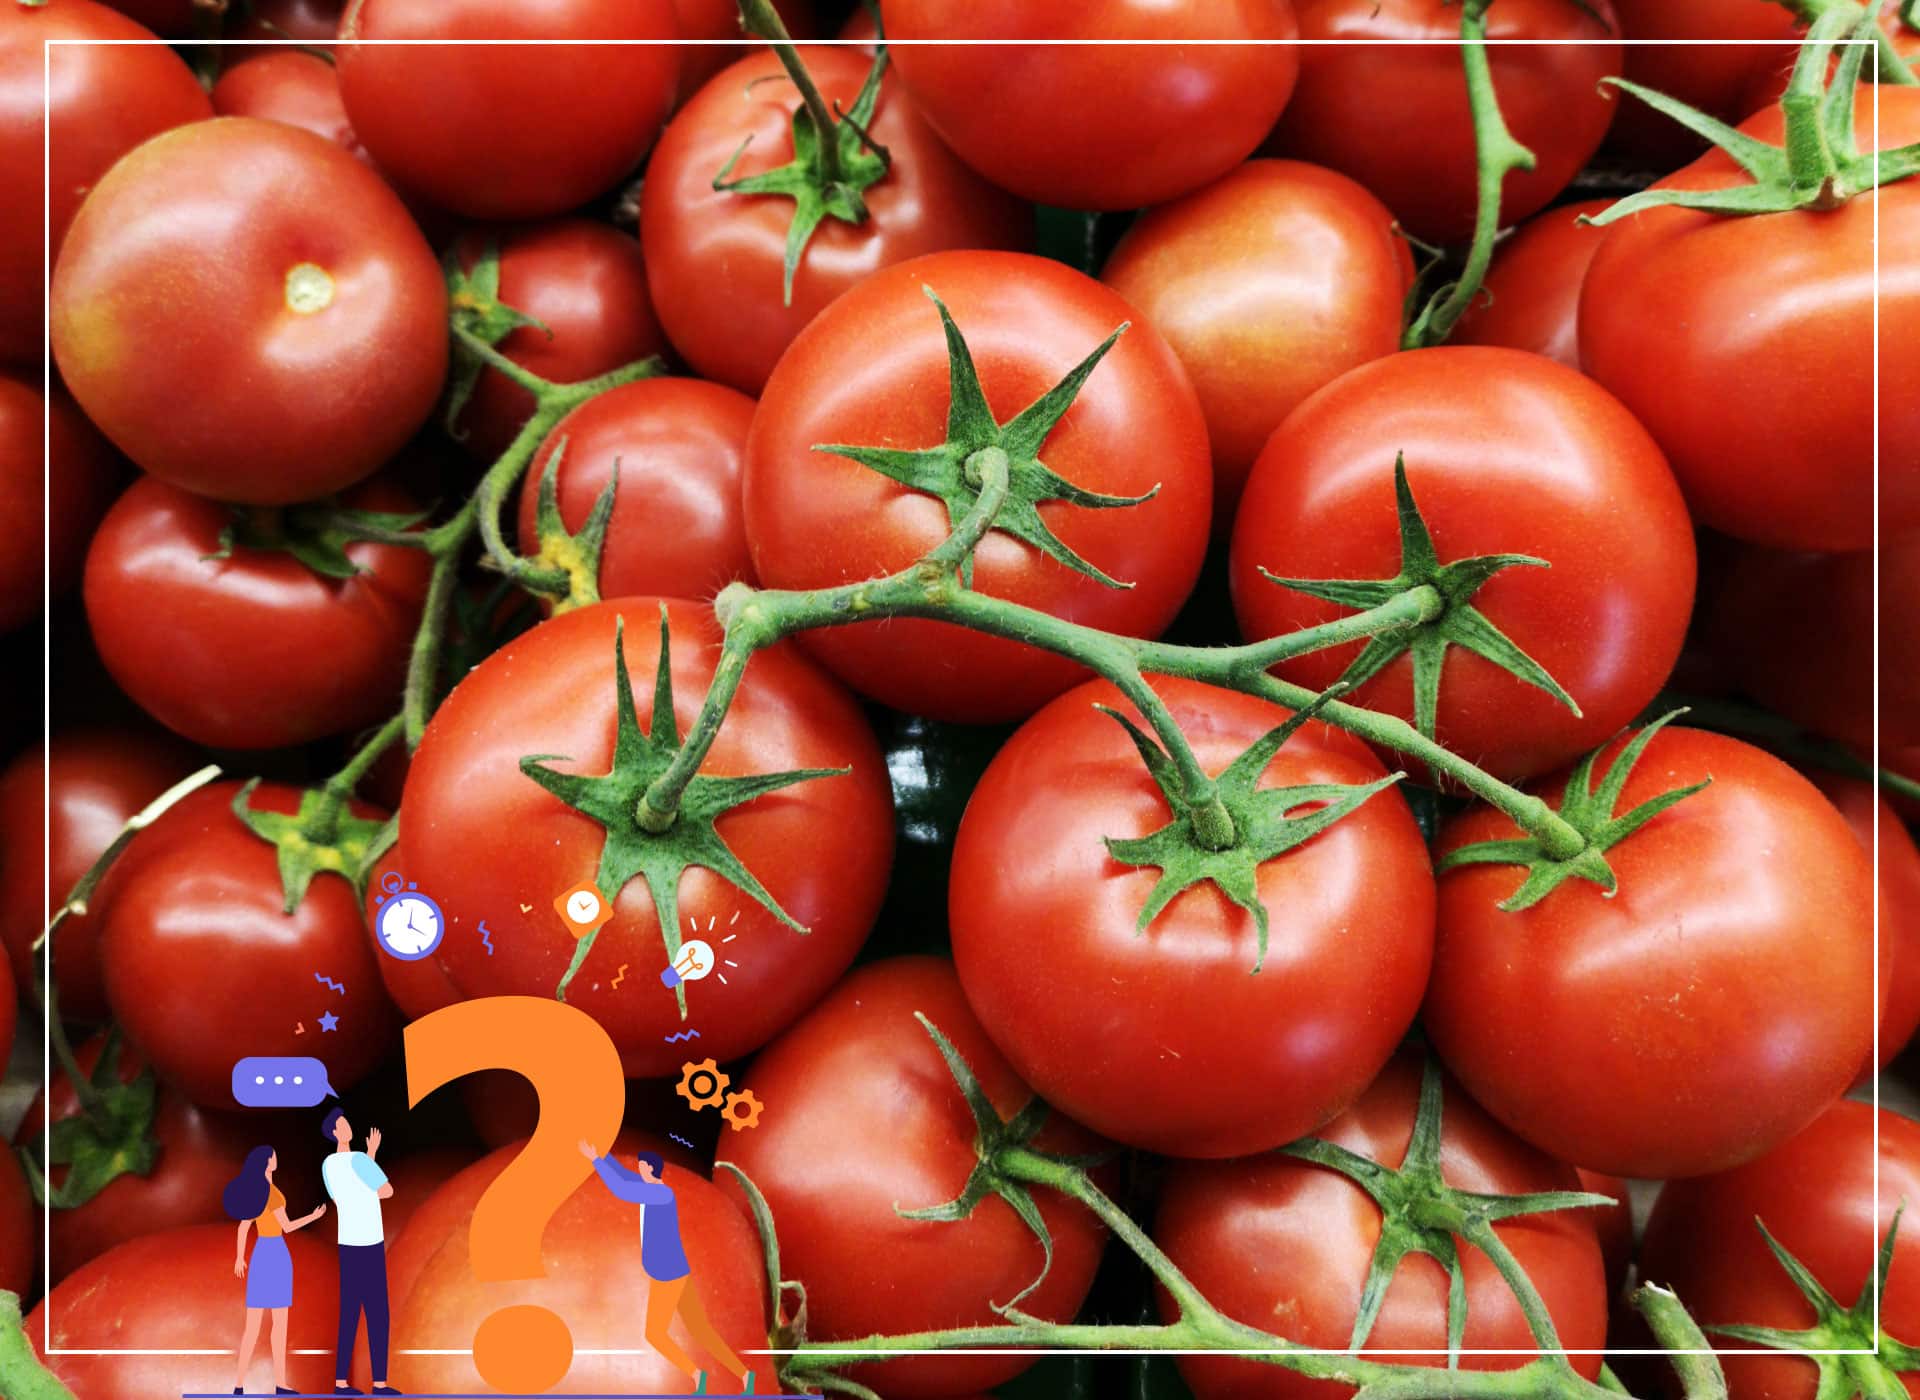 Știați că: 1 gram de semințe poate produce 9 tone de roșii?